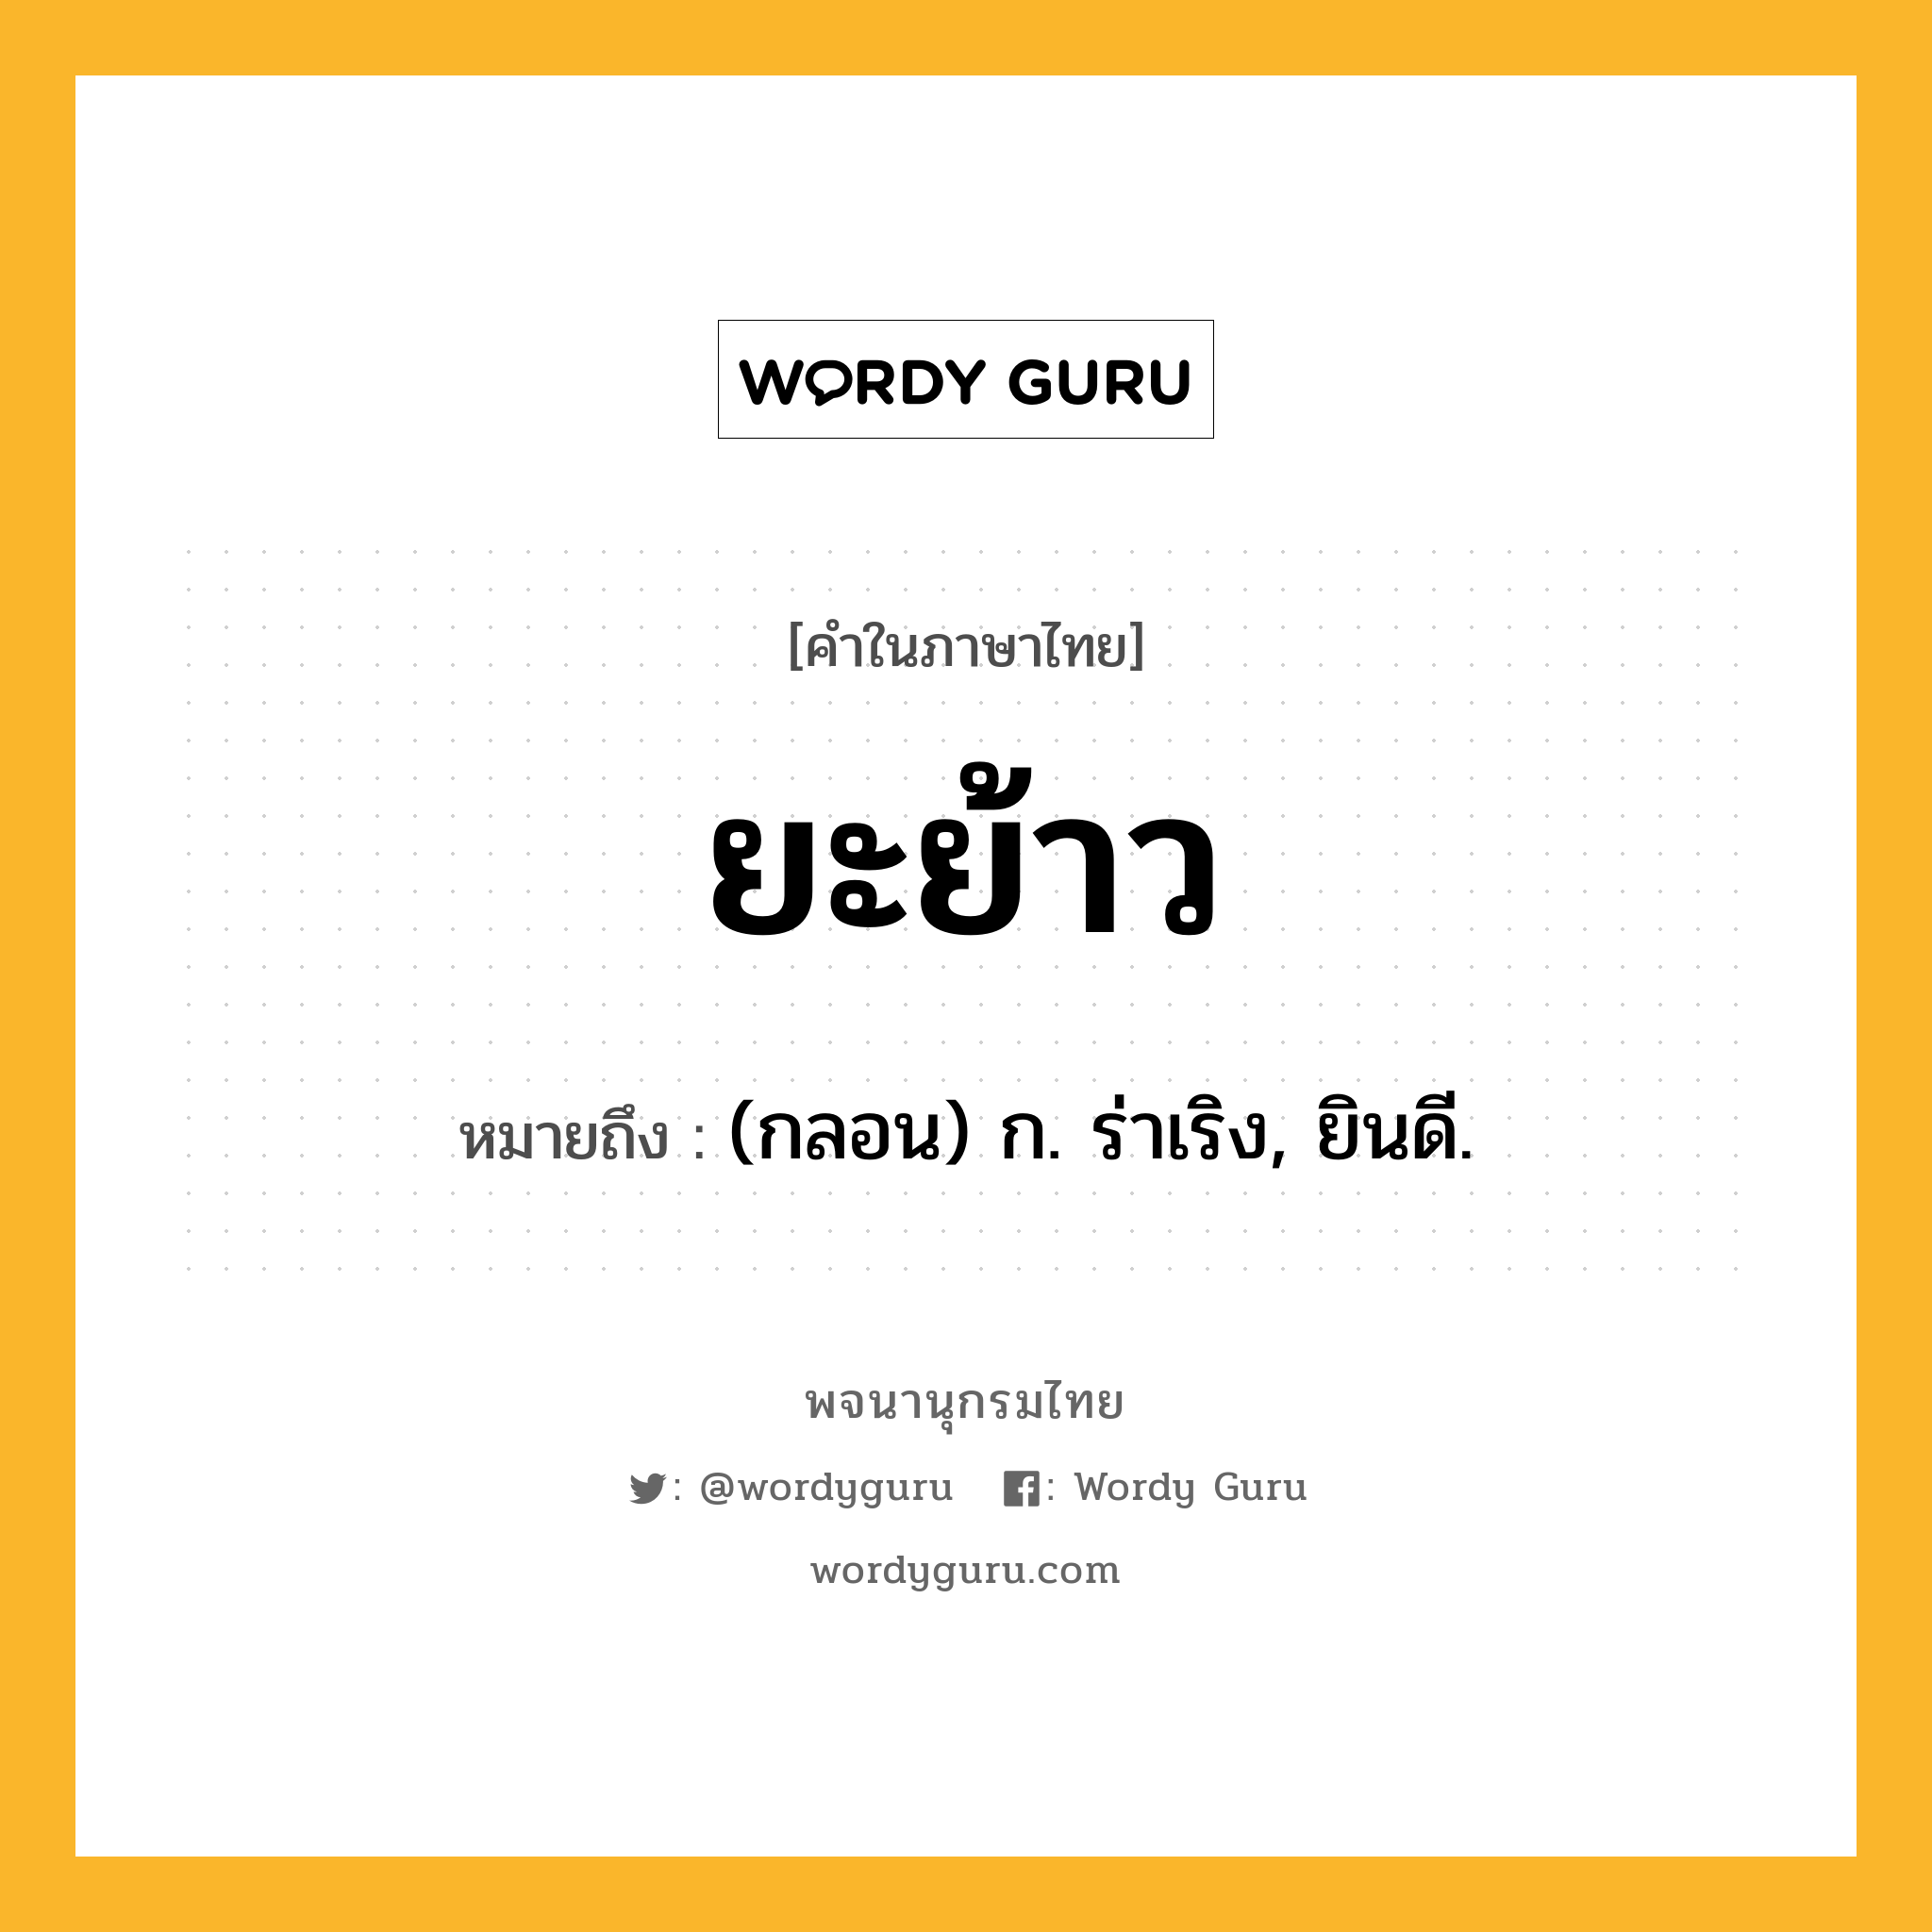 ยะย้าว หมายถึงอะไร?, คำในภาษาไทย ยะย้าว หมายถึง (กลอน) ก. ร่าเริง, ยินดี.